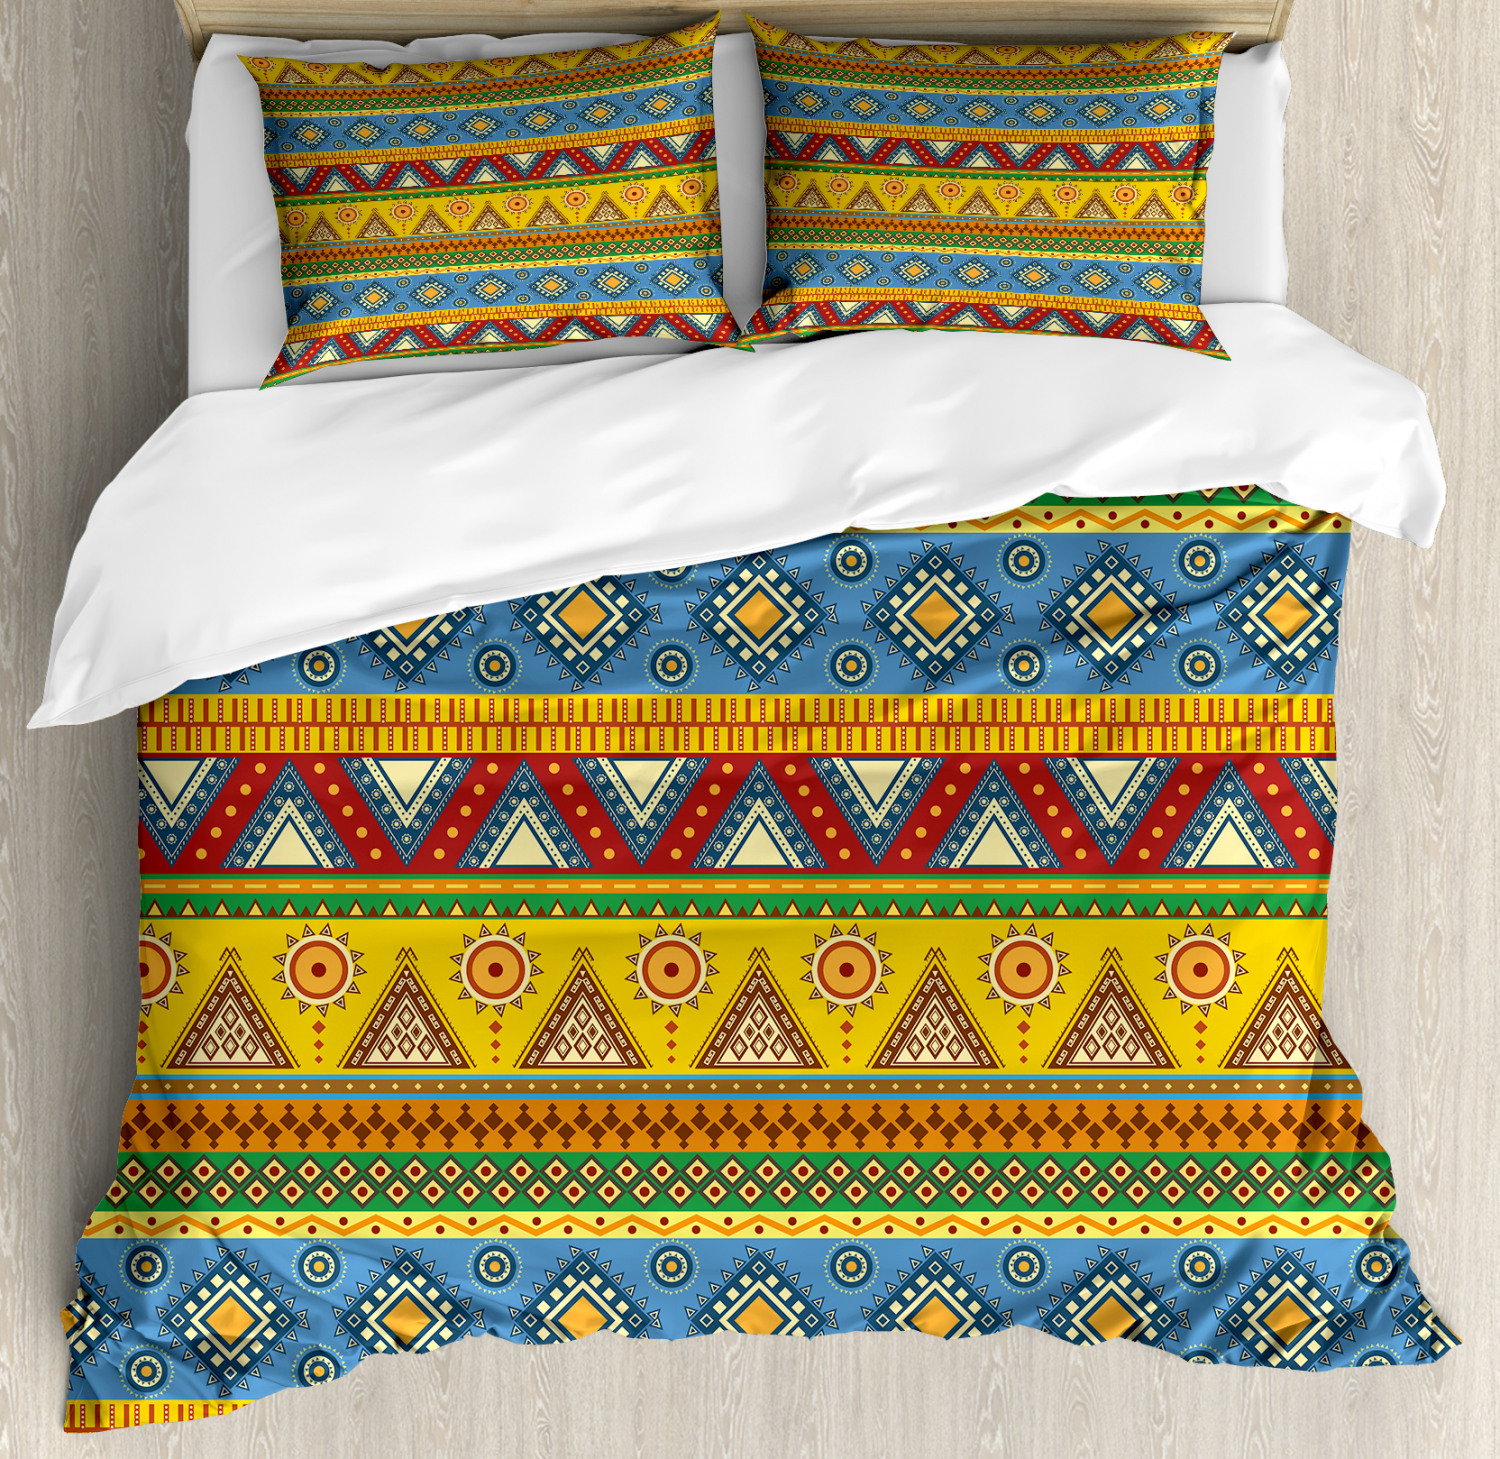 Aztec Duvet Cover Set With Pillow Shams Folk Motif Mexican Sun